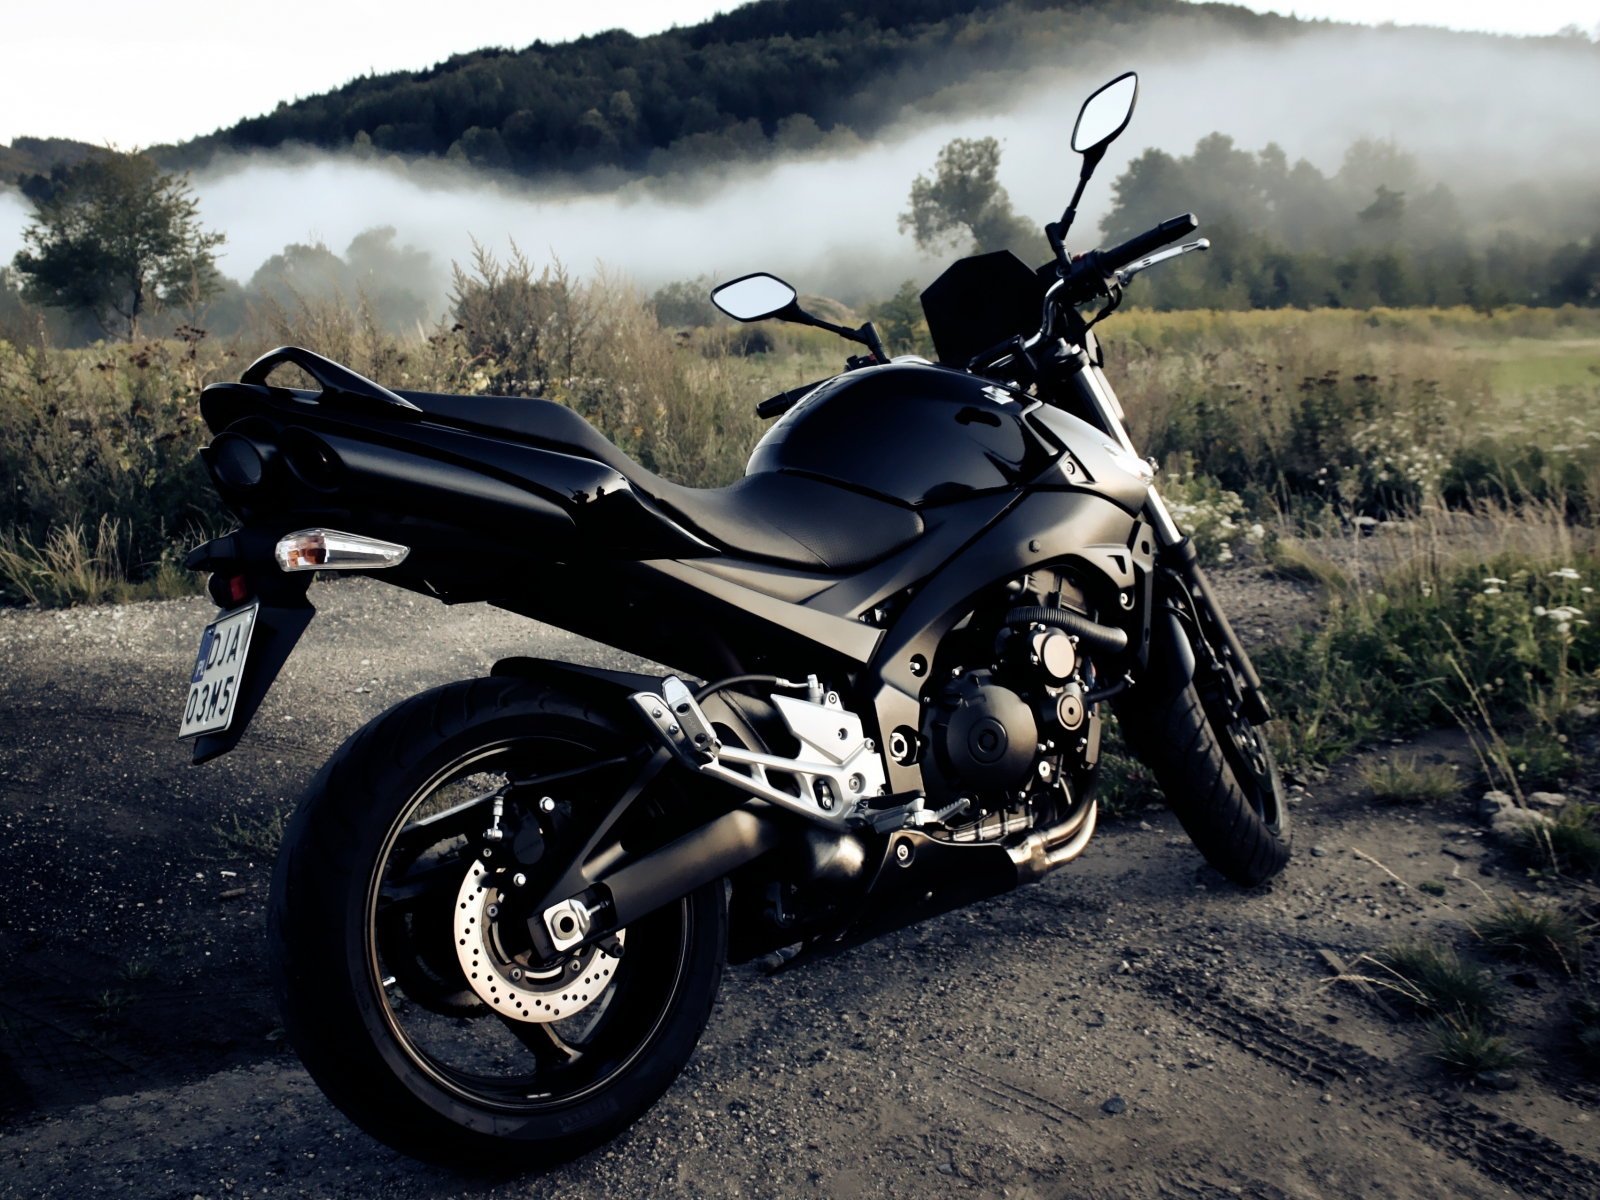 gsr600, дым, фон, черный, трава, мотоцикл